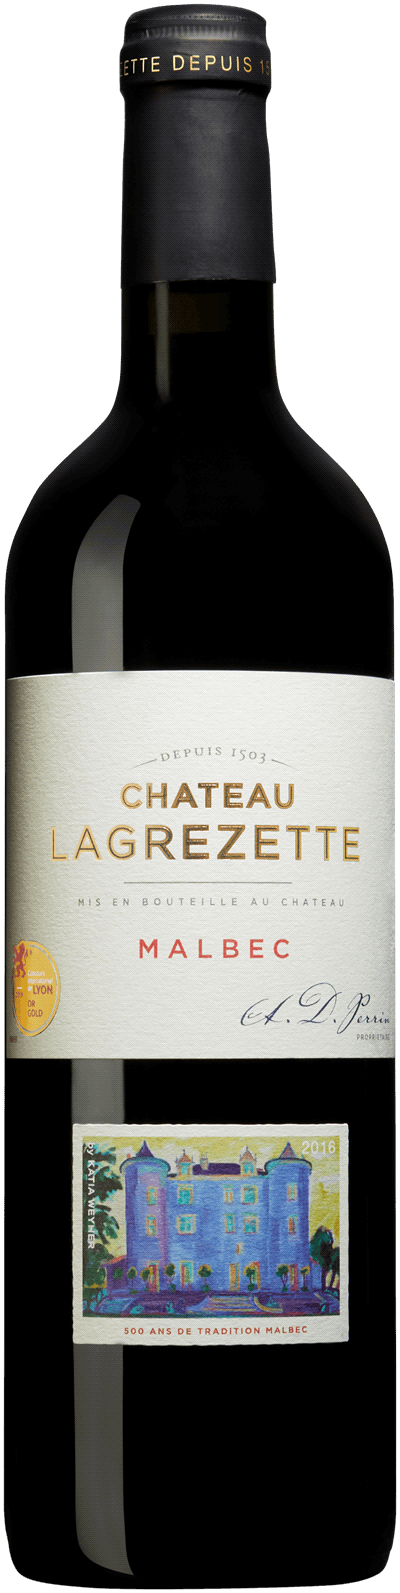 Château Lagrezette Malbec, 2016